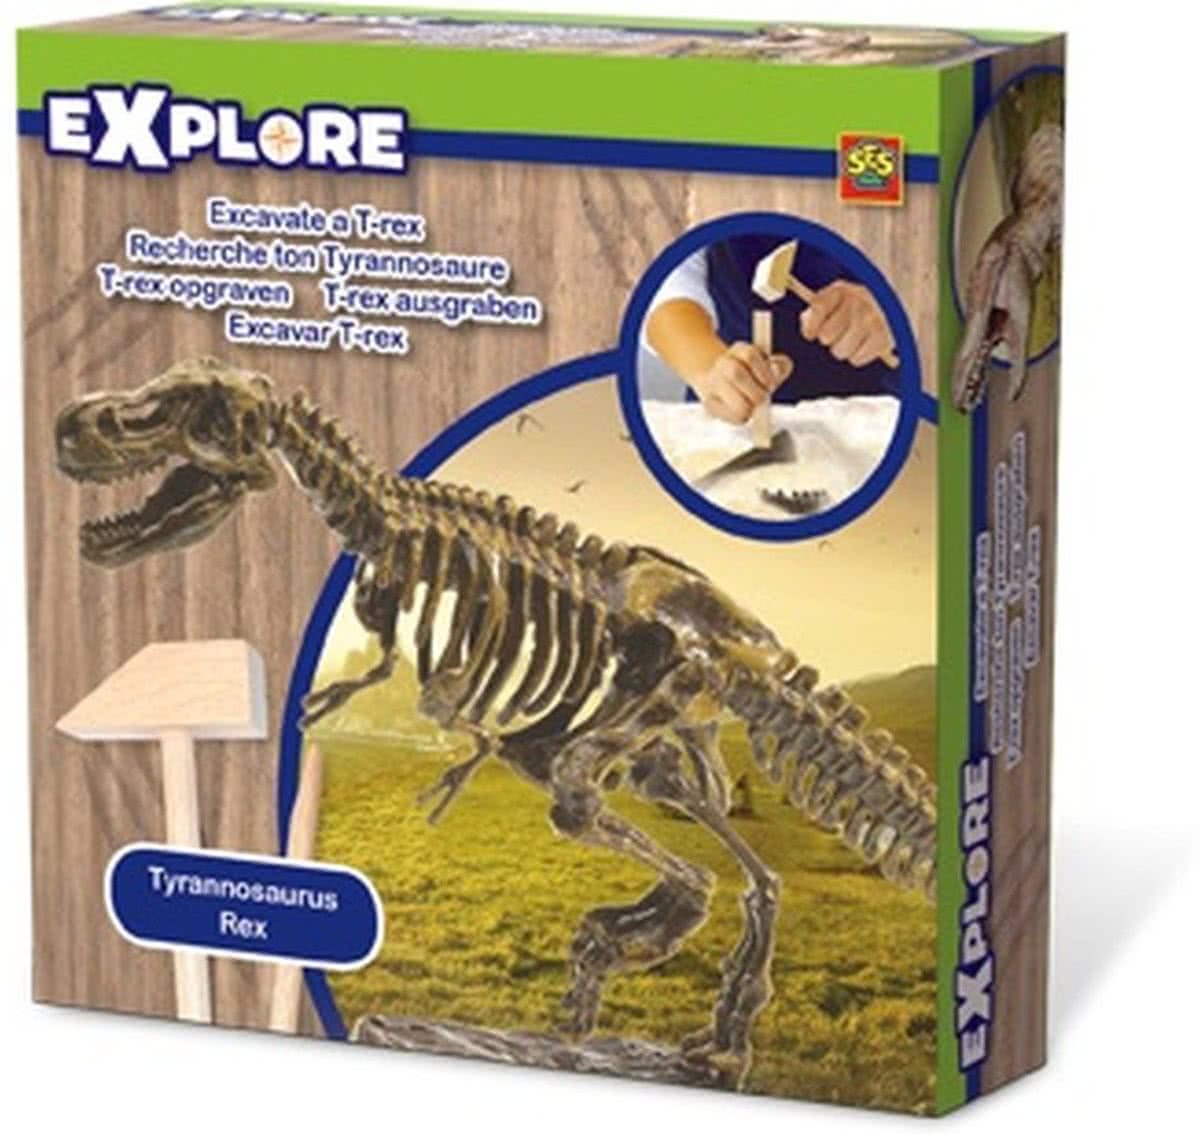 SES Explore T-rex opgraaf